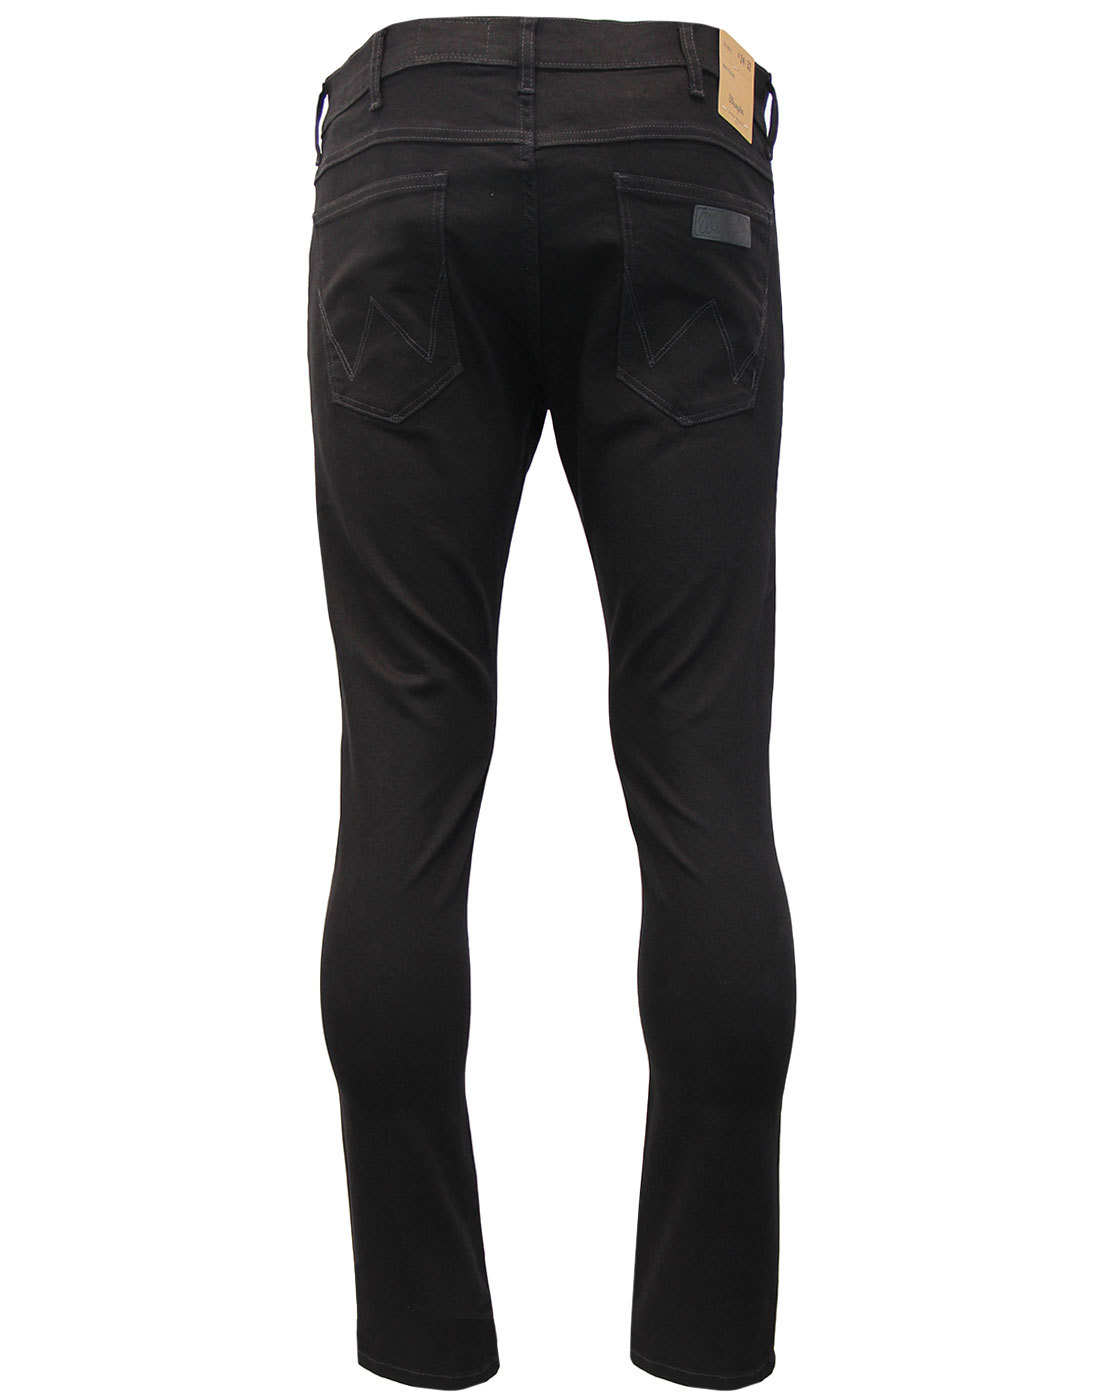 WRANGLER Bryson Men's Retro Mod Skinny Denim Jeans in Black